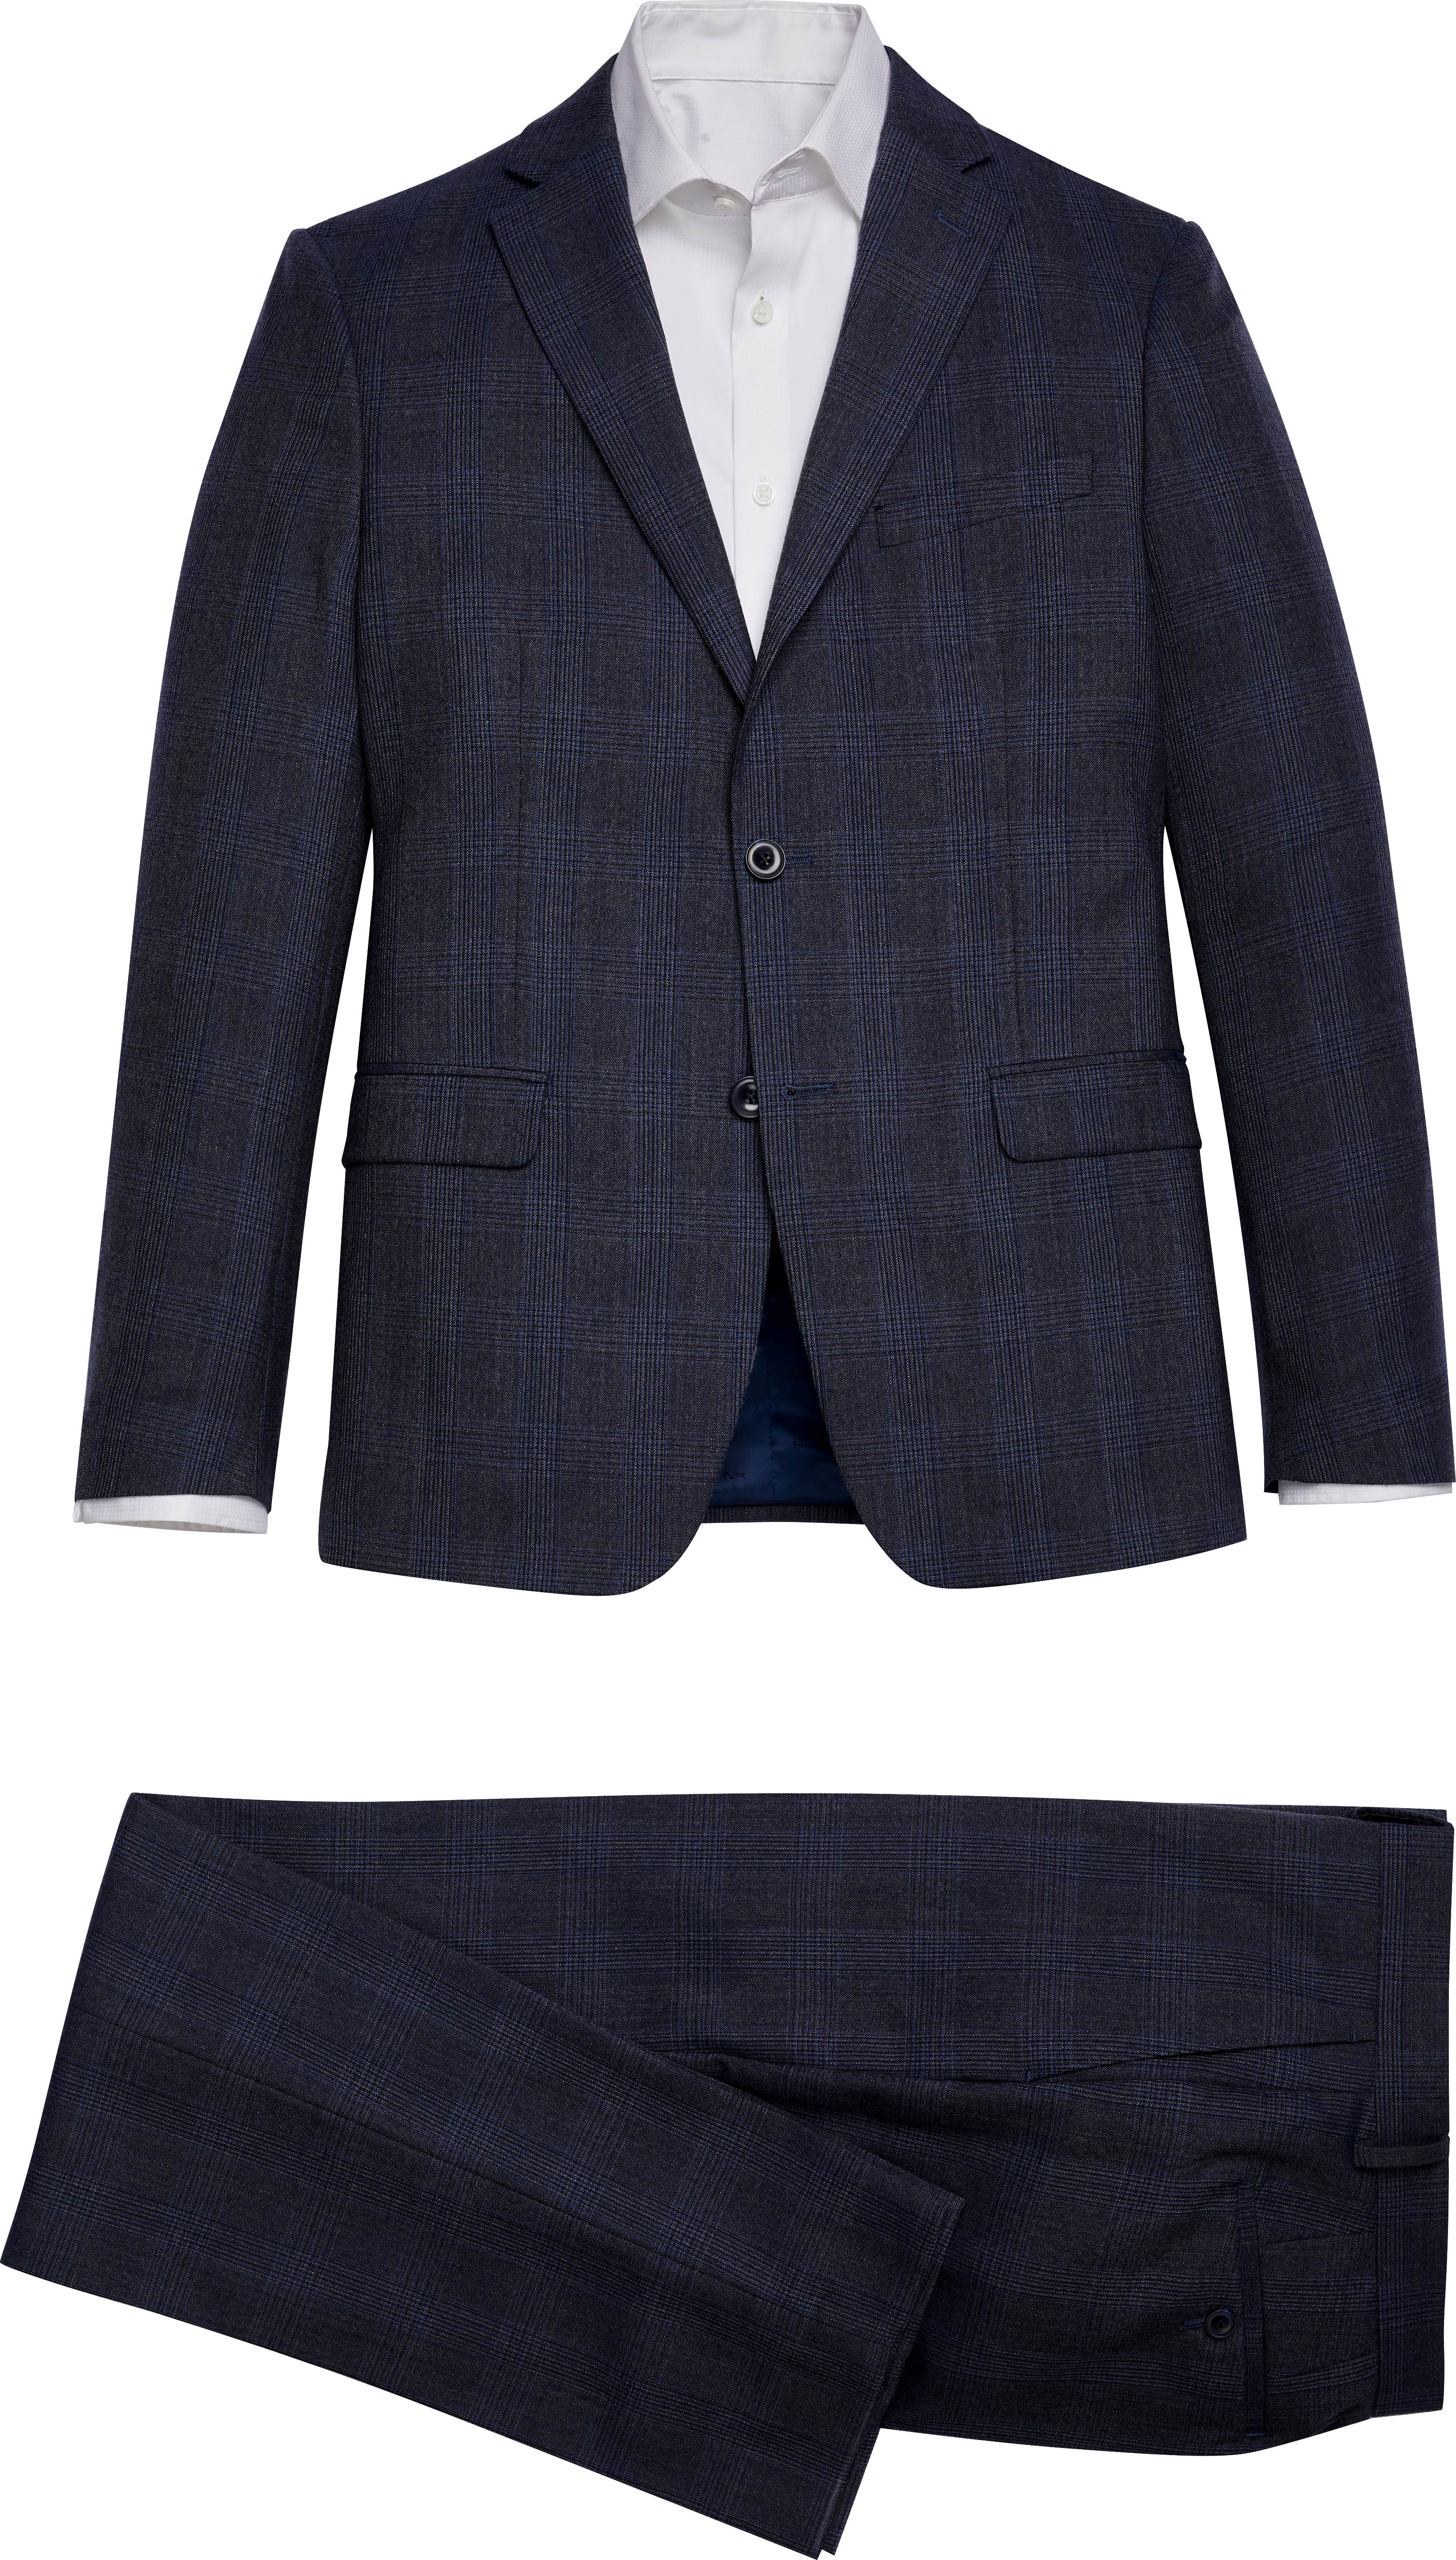 Michael Kors Navy Plaid Modern Fit Suit - Men's Sale | Men's Wearhouse